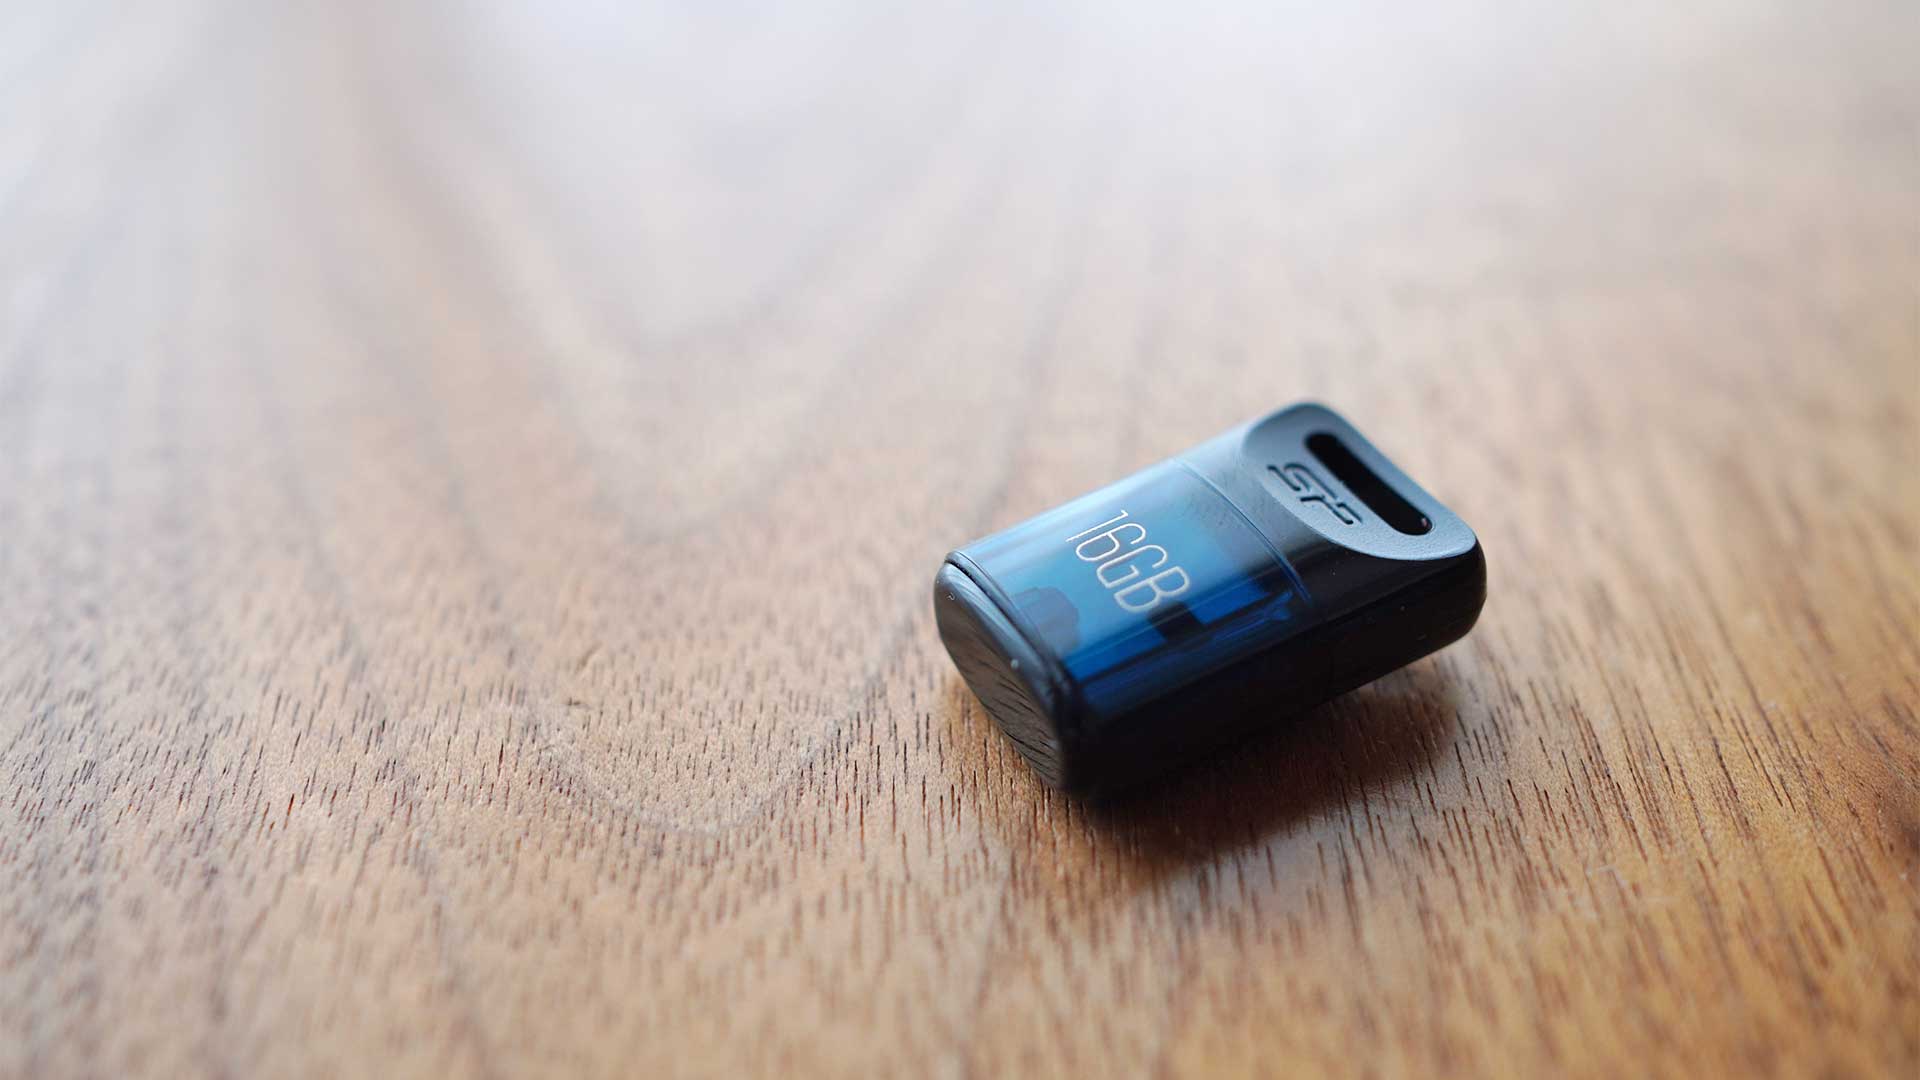 USBメモリー,シリコンパワー,小さい,コンパクト,軽い,安い,防滴